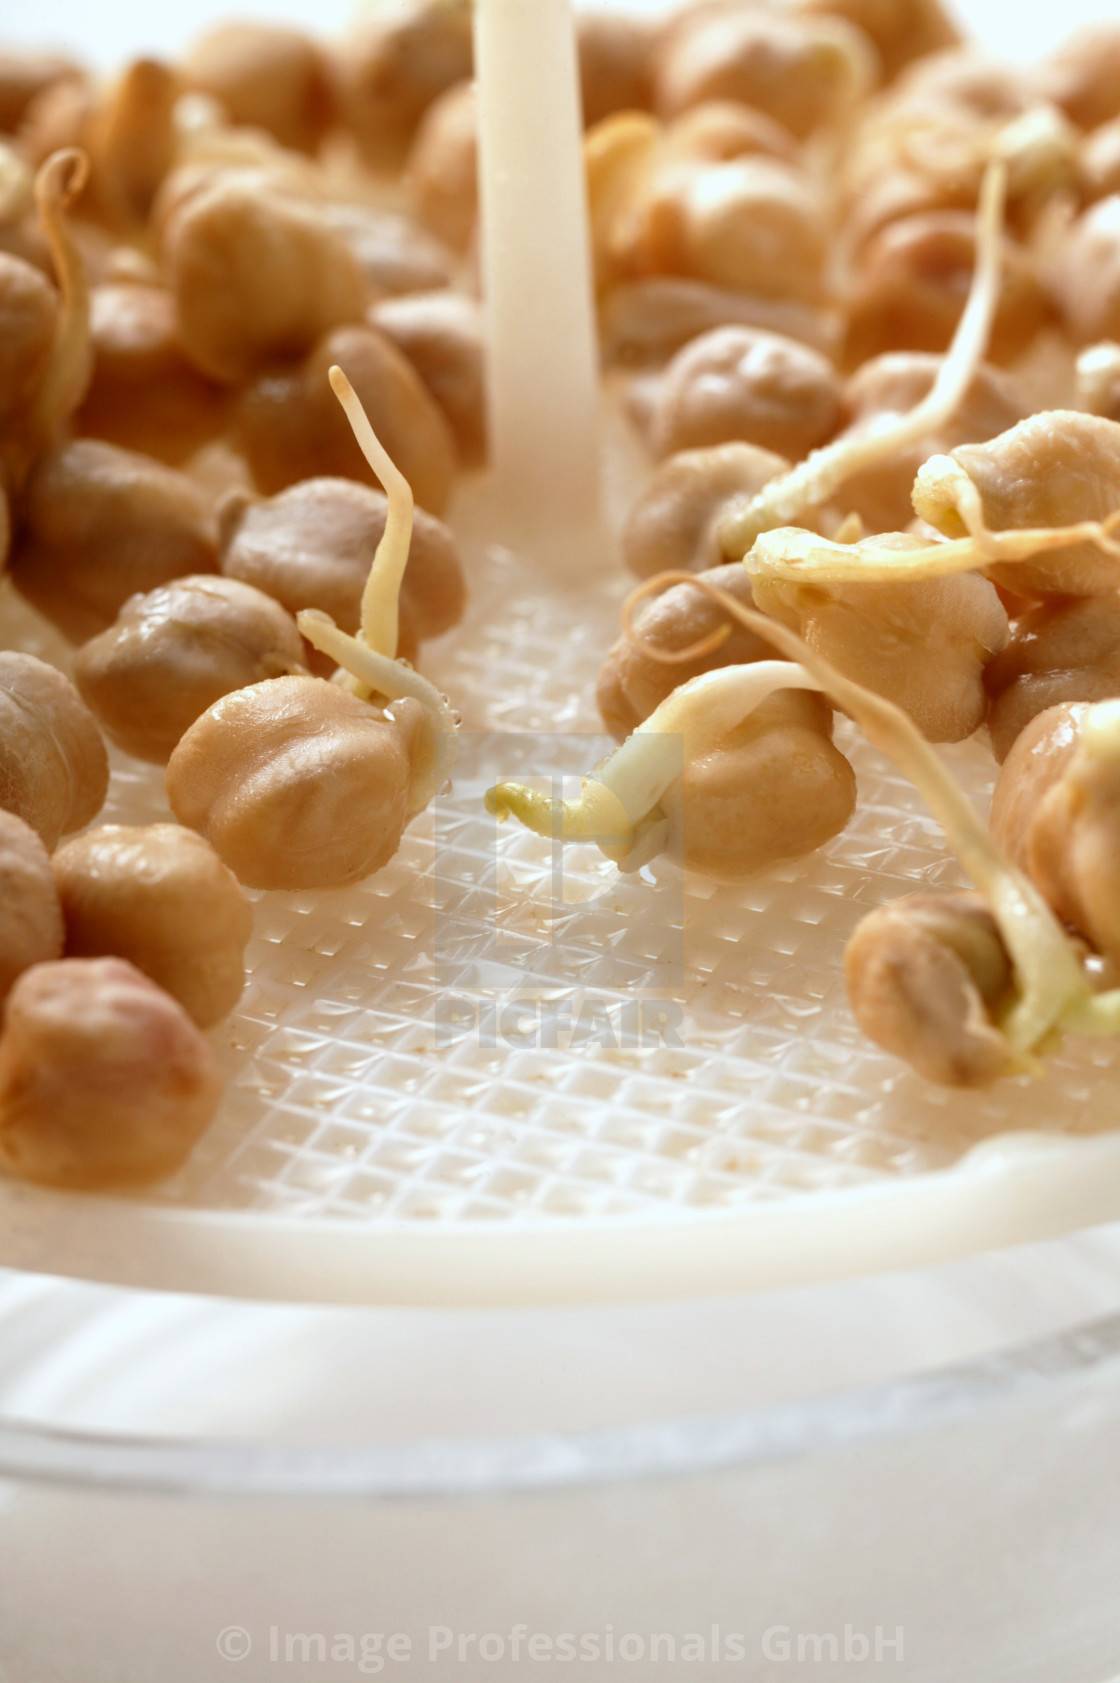 Польза и вред пророщенных грецких орехов. Как прорастить самостоятельно и применять?